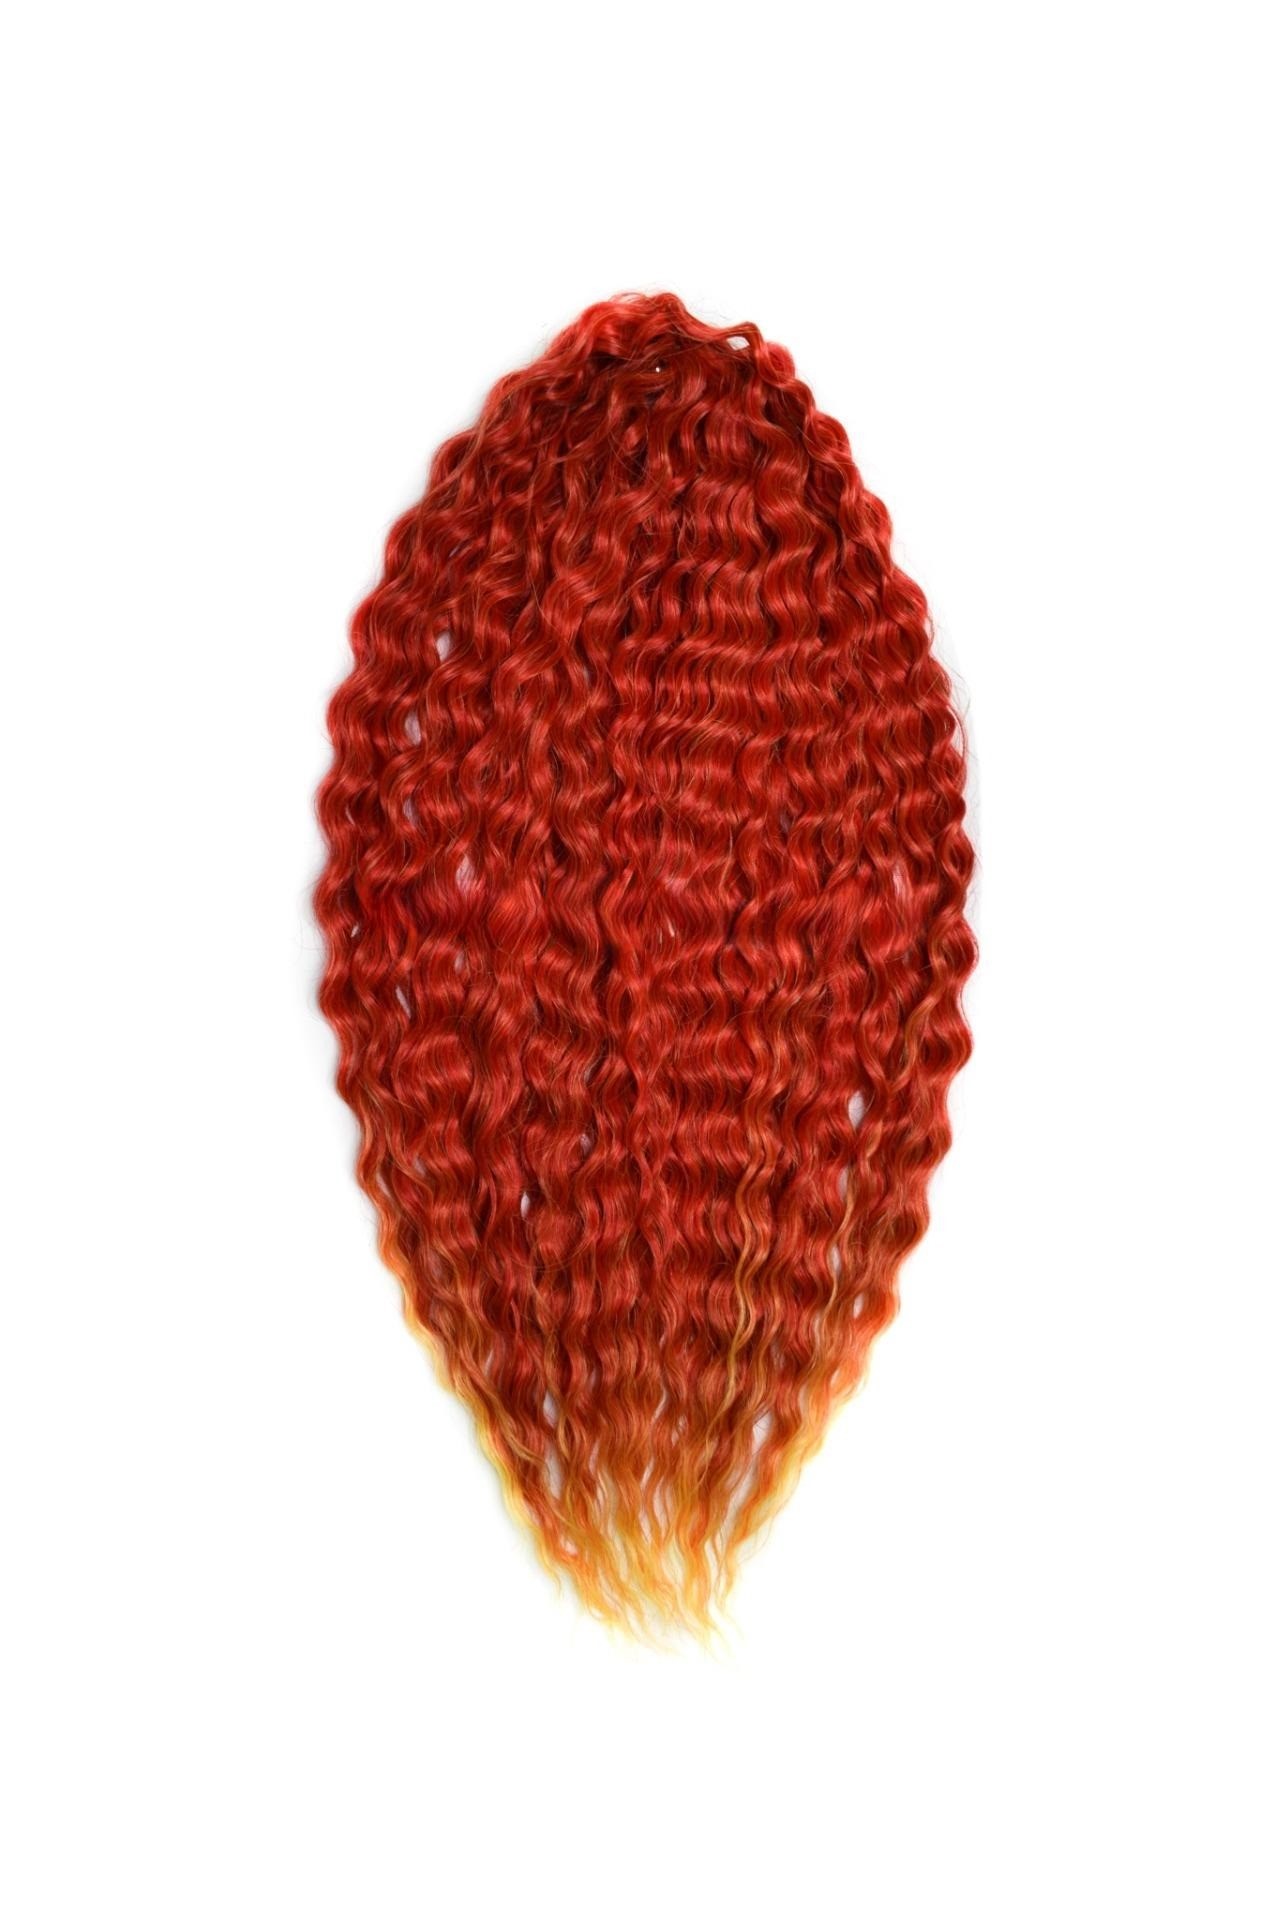 Афрокудри для плетения волос Ariel Ариэль цвет FIRE оранжевый длина 66см вес 300г афрокудри для плетения волос ariel ариэль blue 7 длина 66см вес 300г